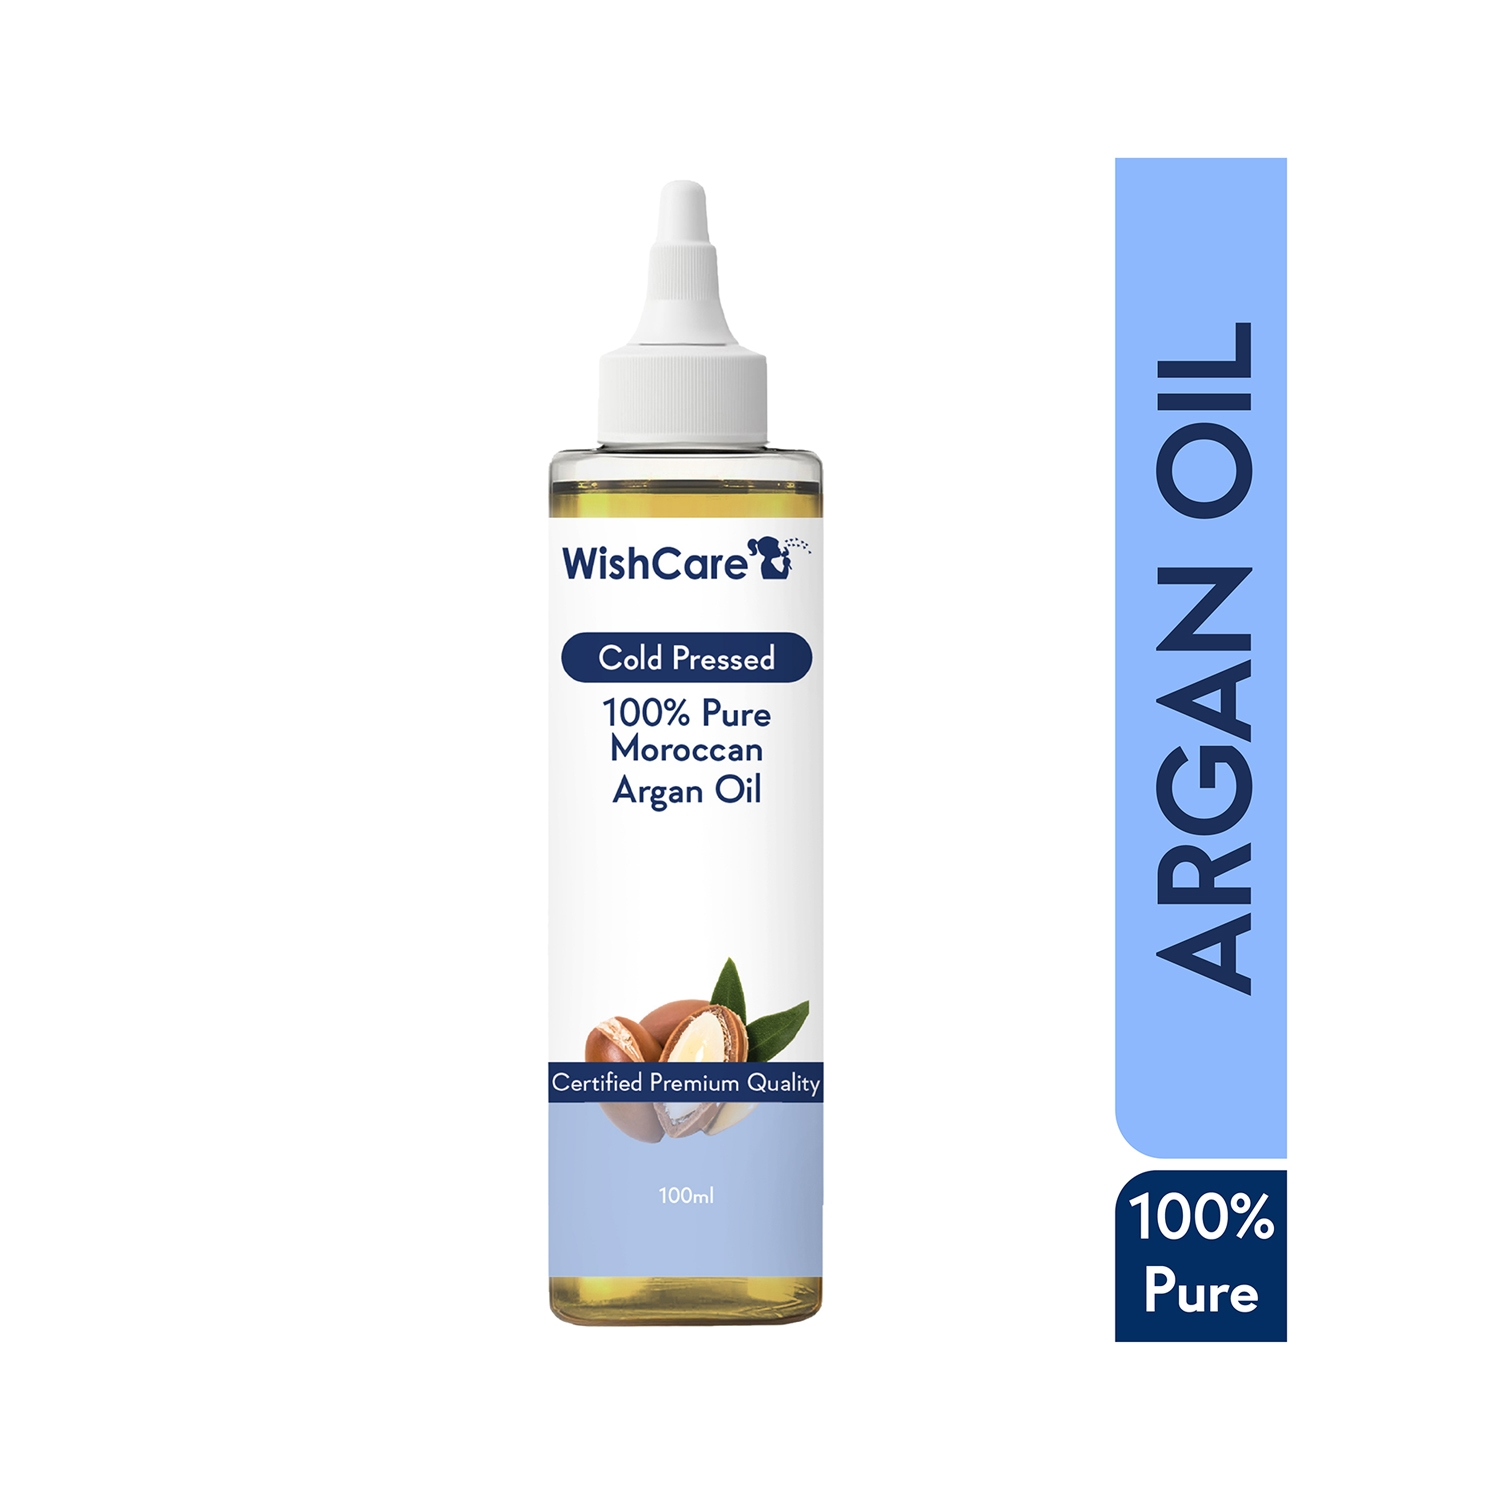 WishCare 100% Pure Cold Pressed Natural Moroccan Argan Oil (100ml)